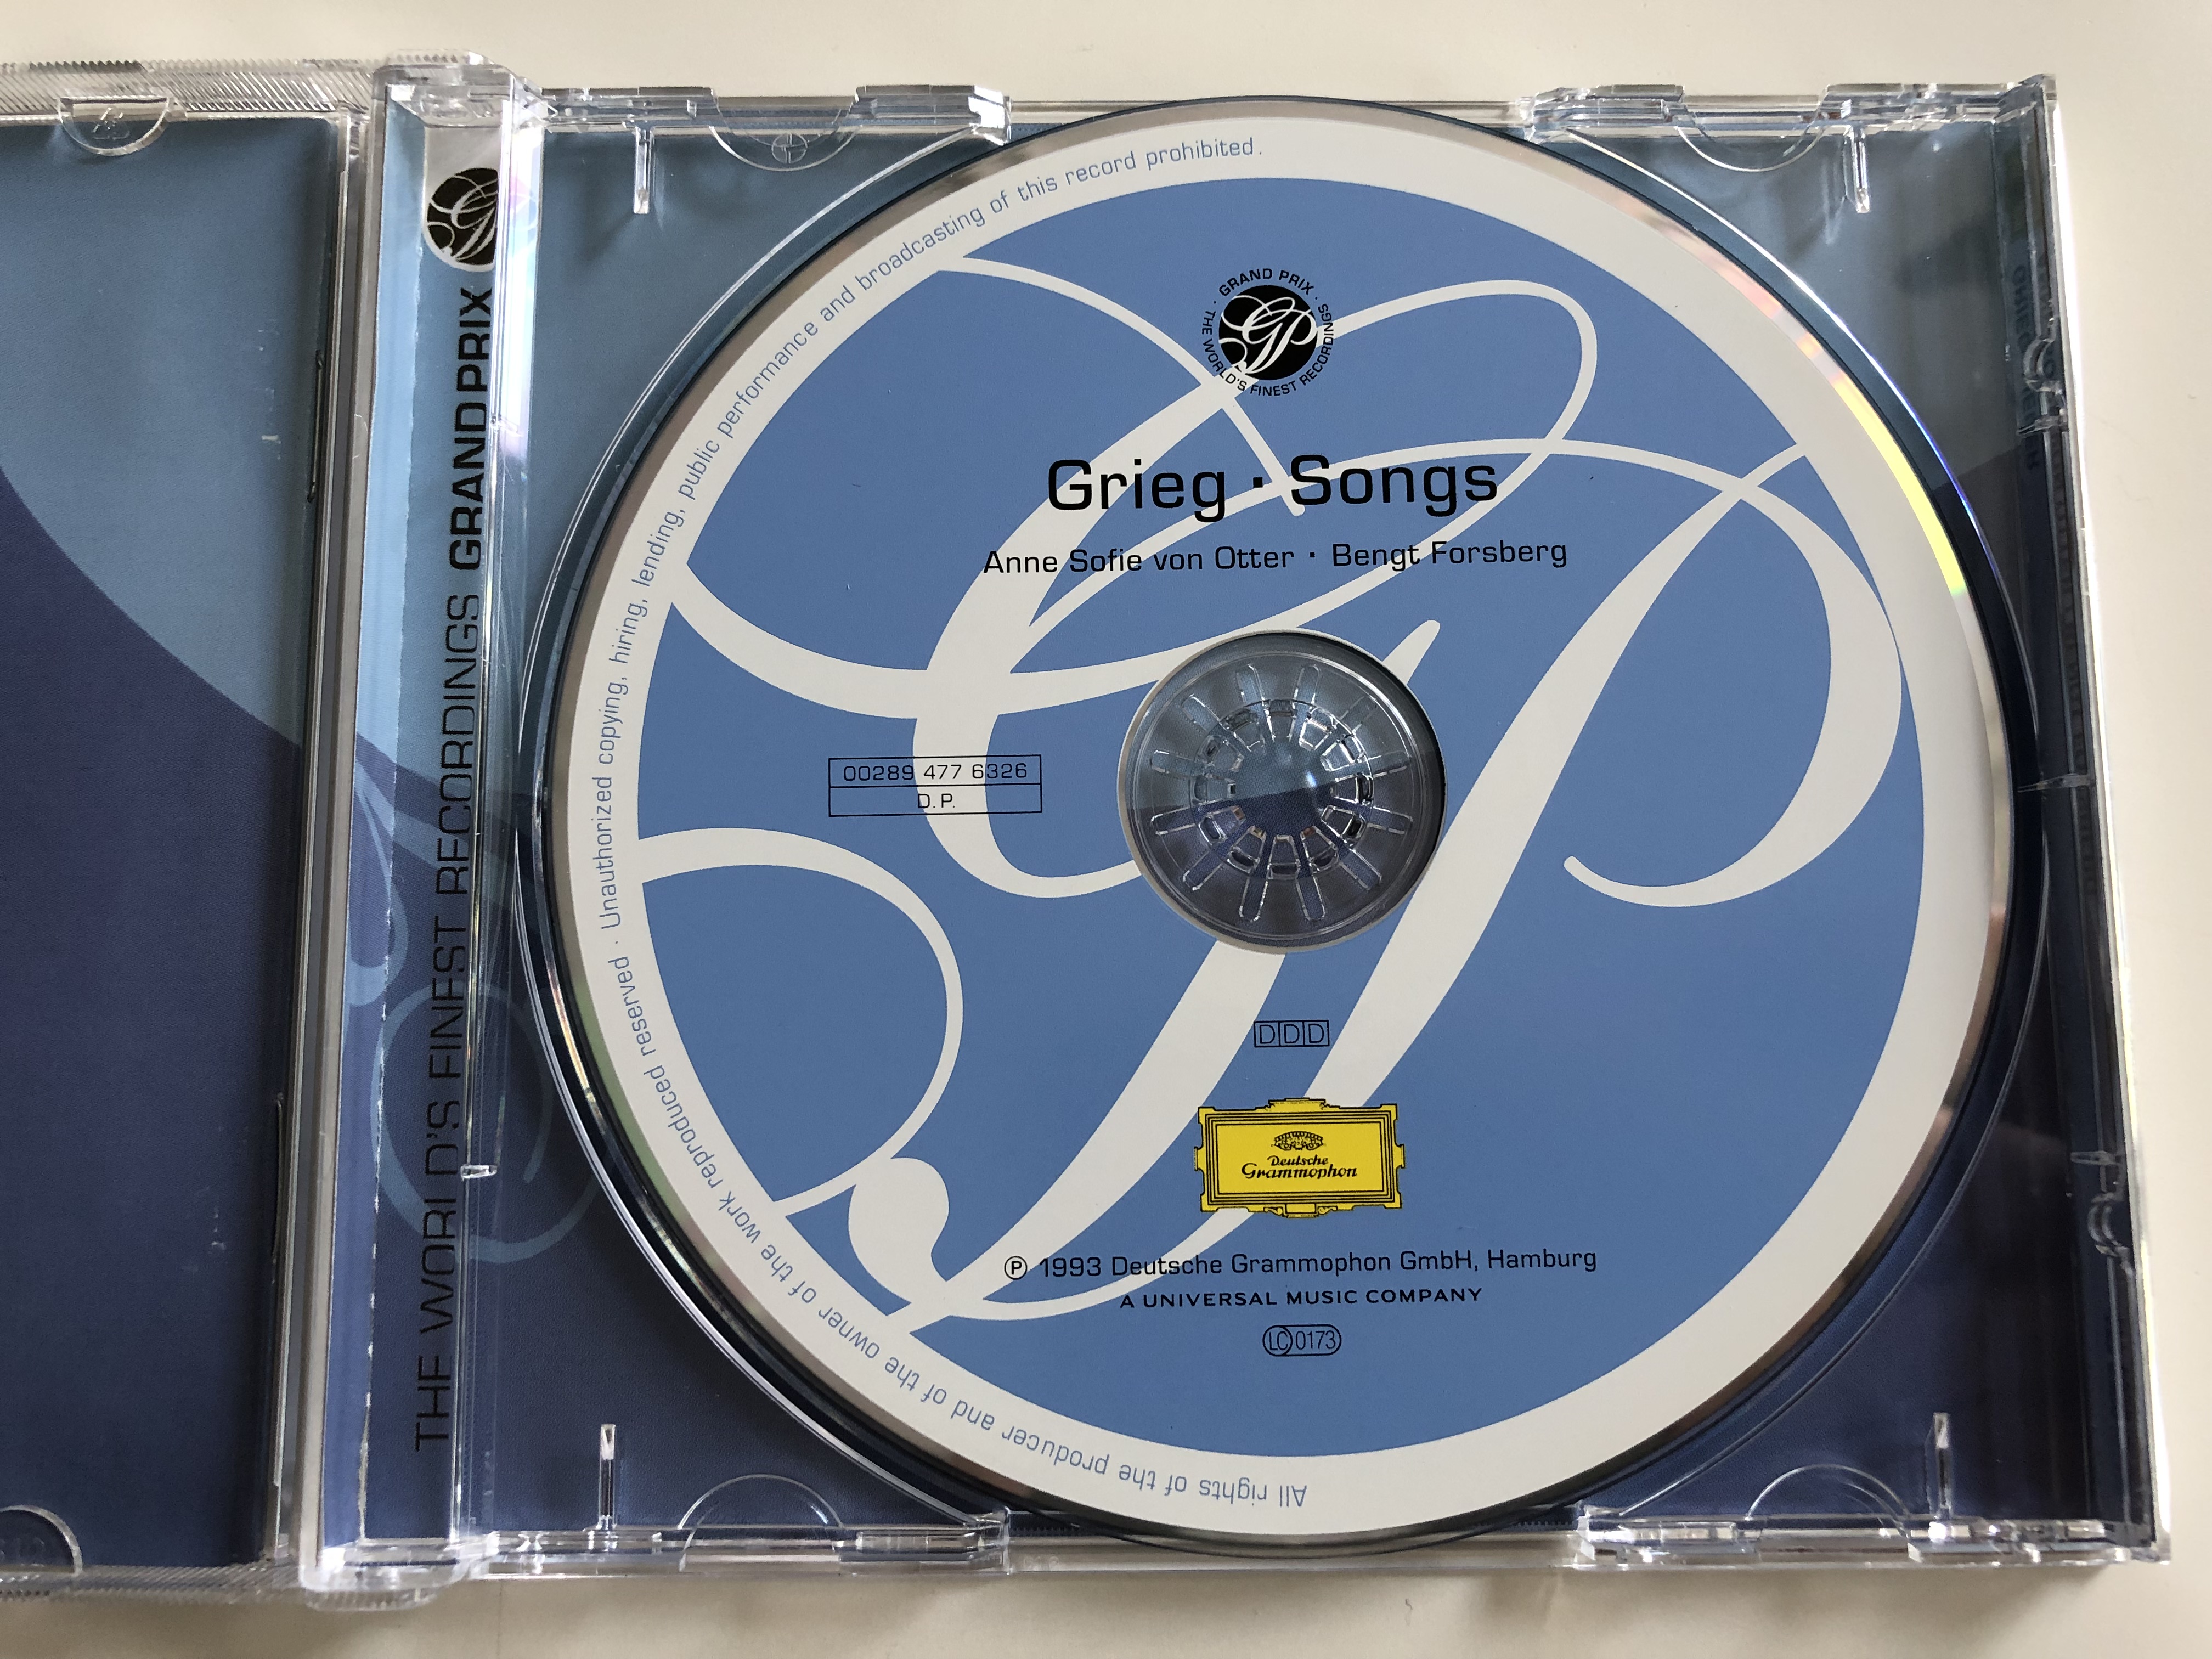 grieg-songs-lieder-anne-sofie-von-otter-mezzo-soprano-bengt-forsberg-piano-deutsche-grammophon-audio-cd-1993-8-.jpg